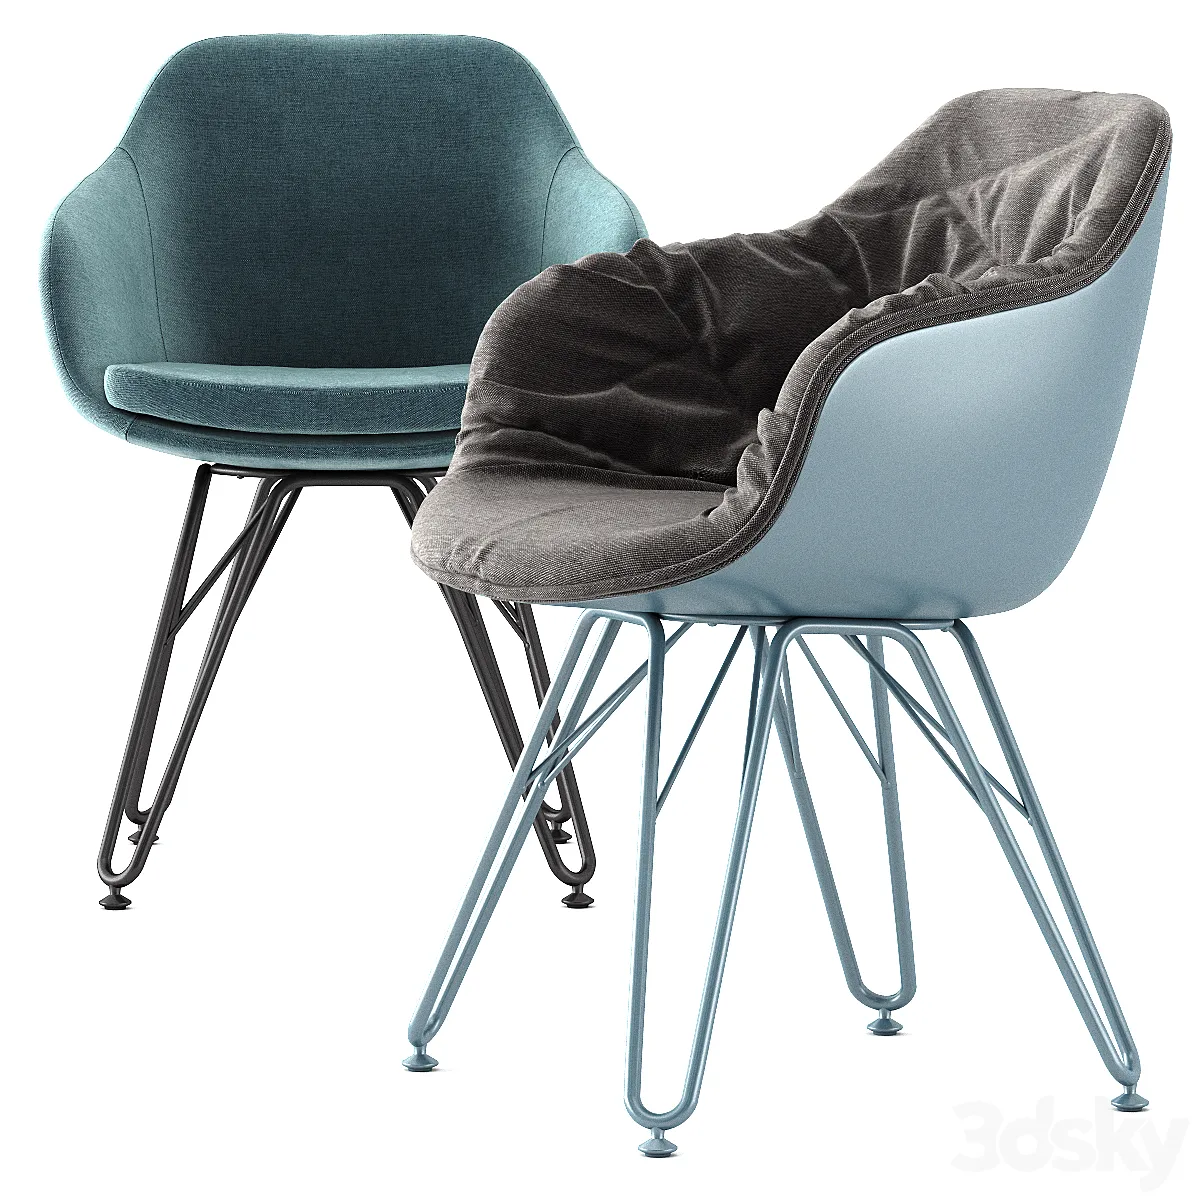 Lap 4051, Lap 4052 by Dressy - Chair - 3D model